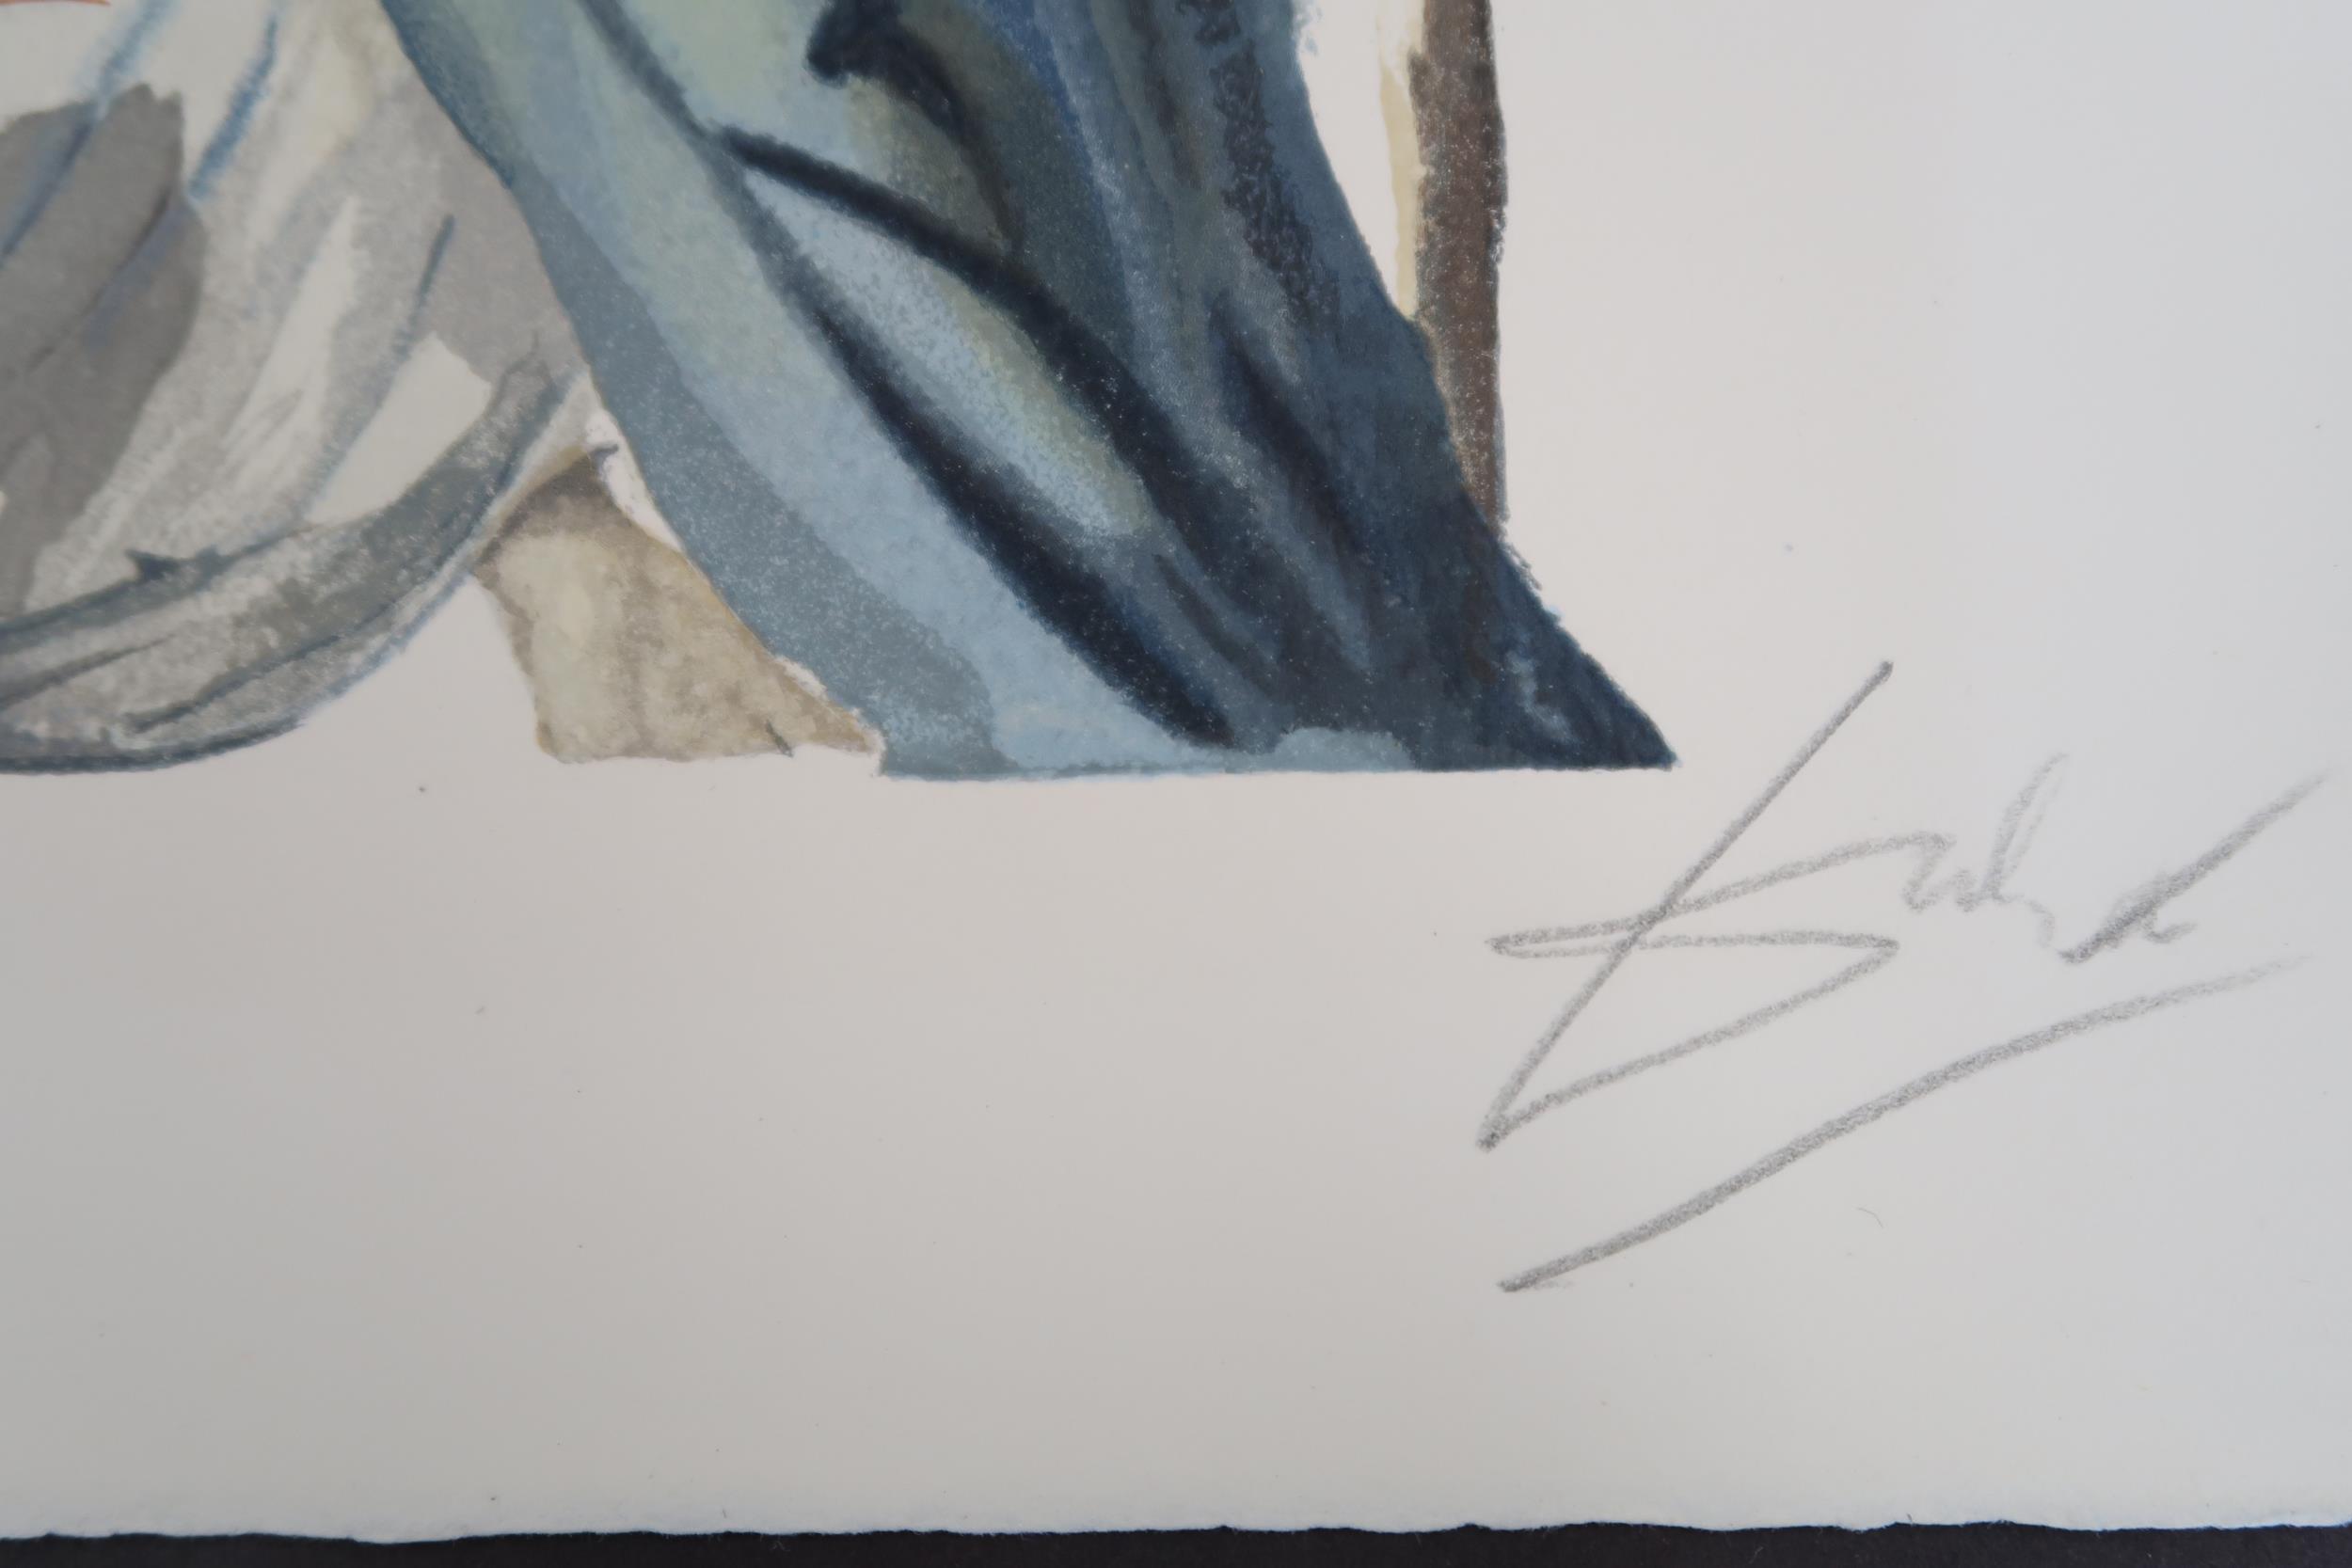 Salvador Dali - Print, unframed - The Blind for Envy Purgatory - 17cm x 25cm - signed - Image 2 of 2